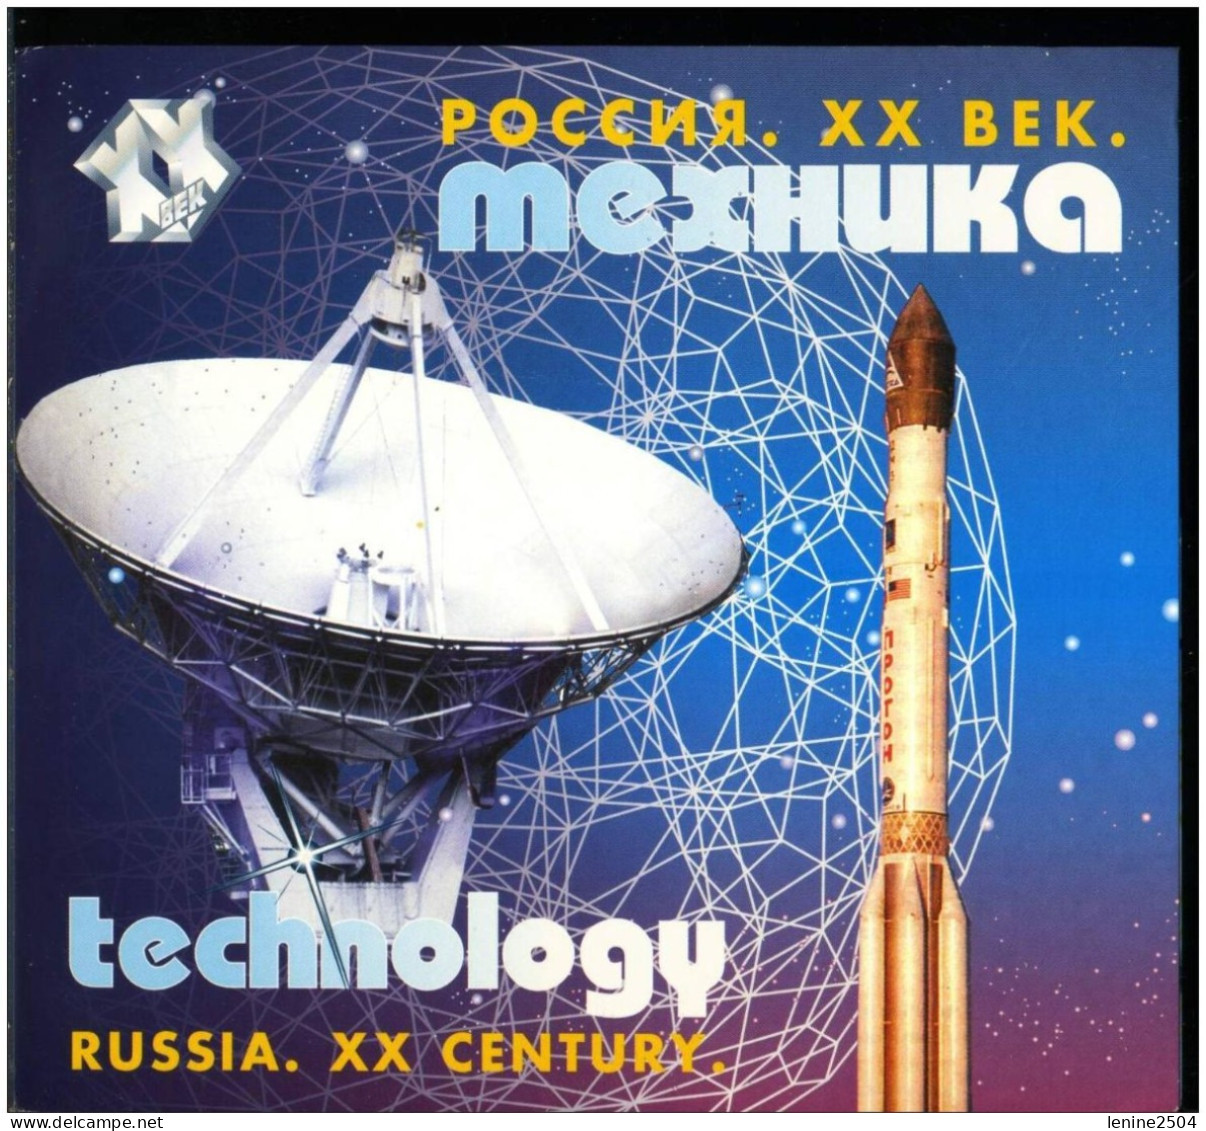 Russie 2000 Yvert N° 6525-6536 ** Emission 1er Jour Carnet Prestige Folder Booklet. - Unused Stamps